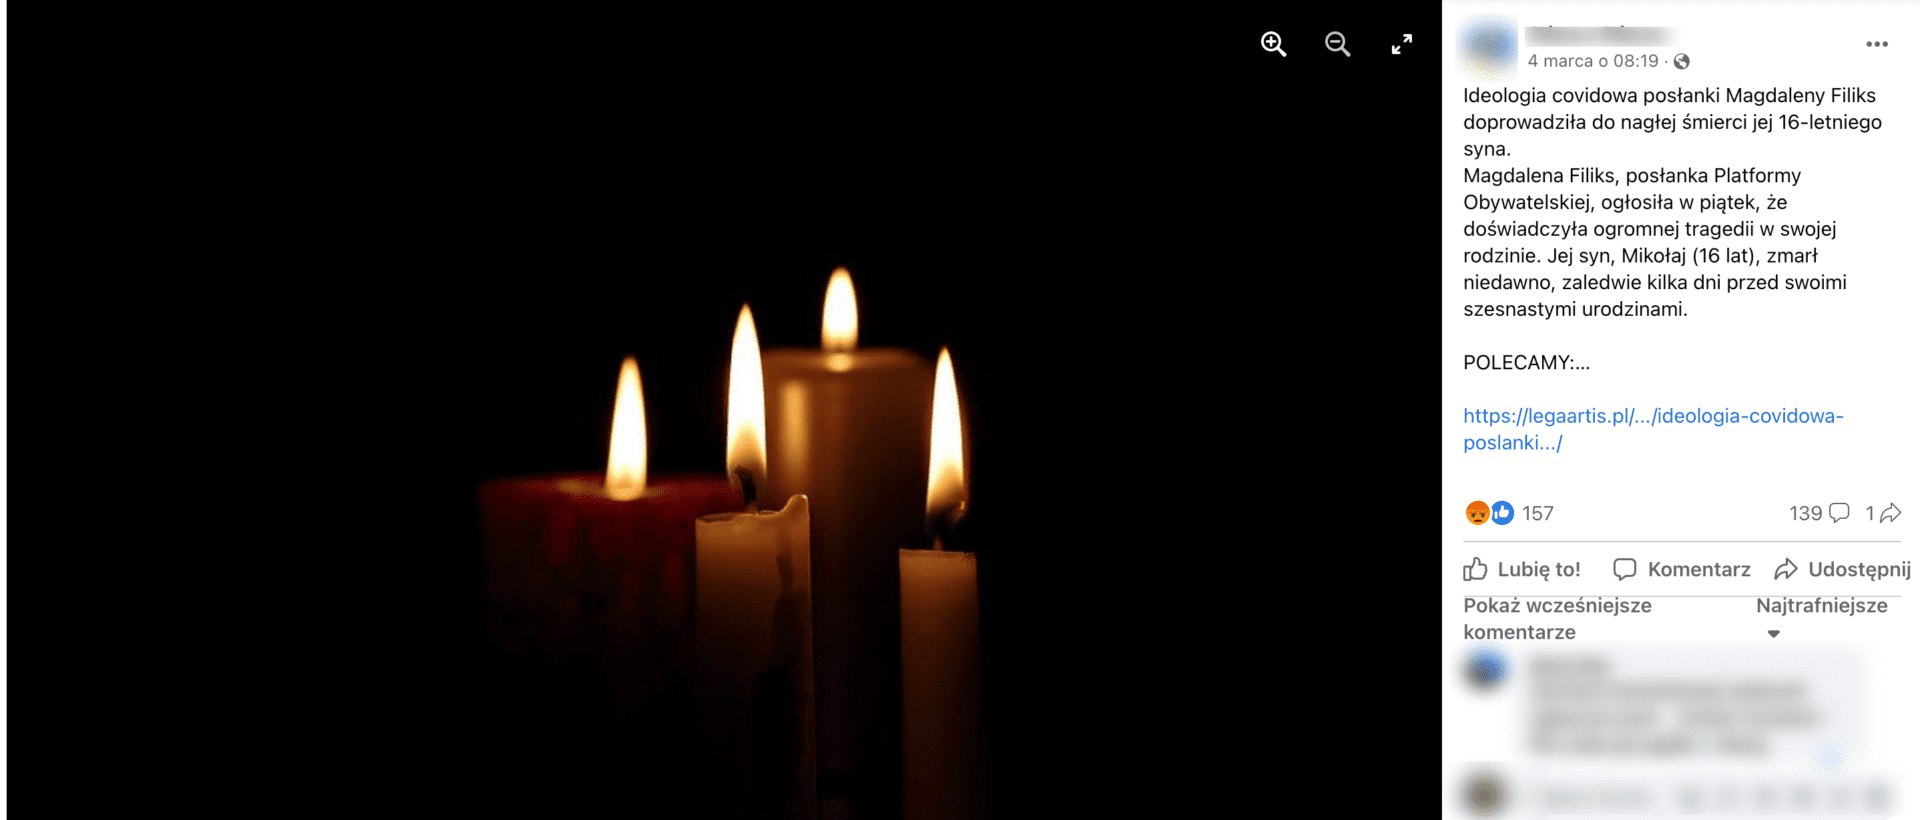 Zrzut ekranu posta na temat rzekomych powodów śmierci syna posłanki Filiks. Widoczne jest zdjęcie palących się świeczek.